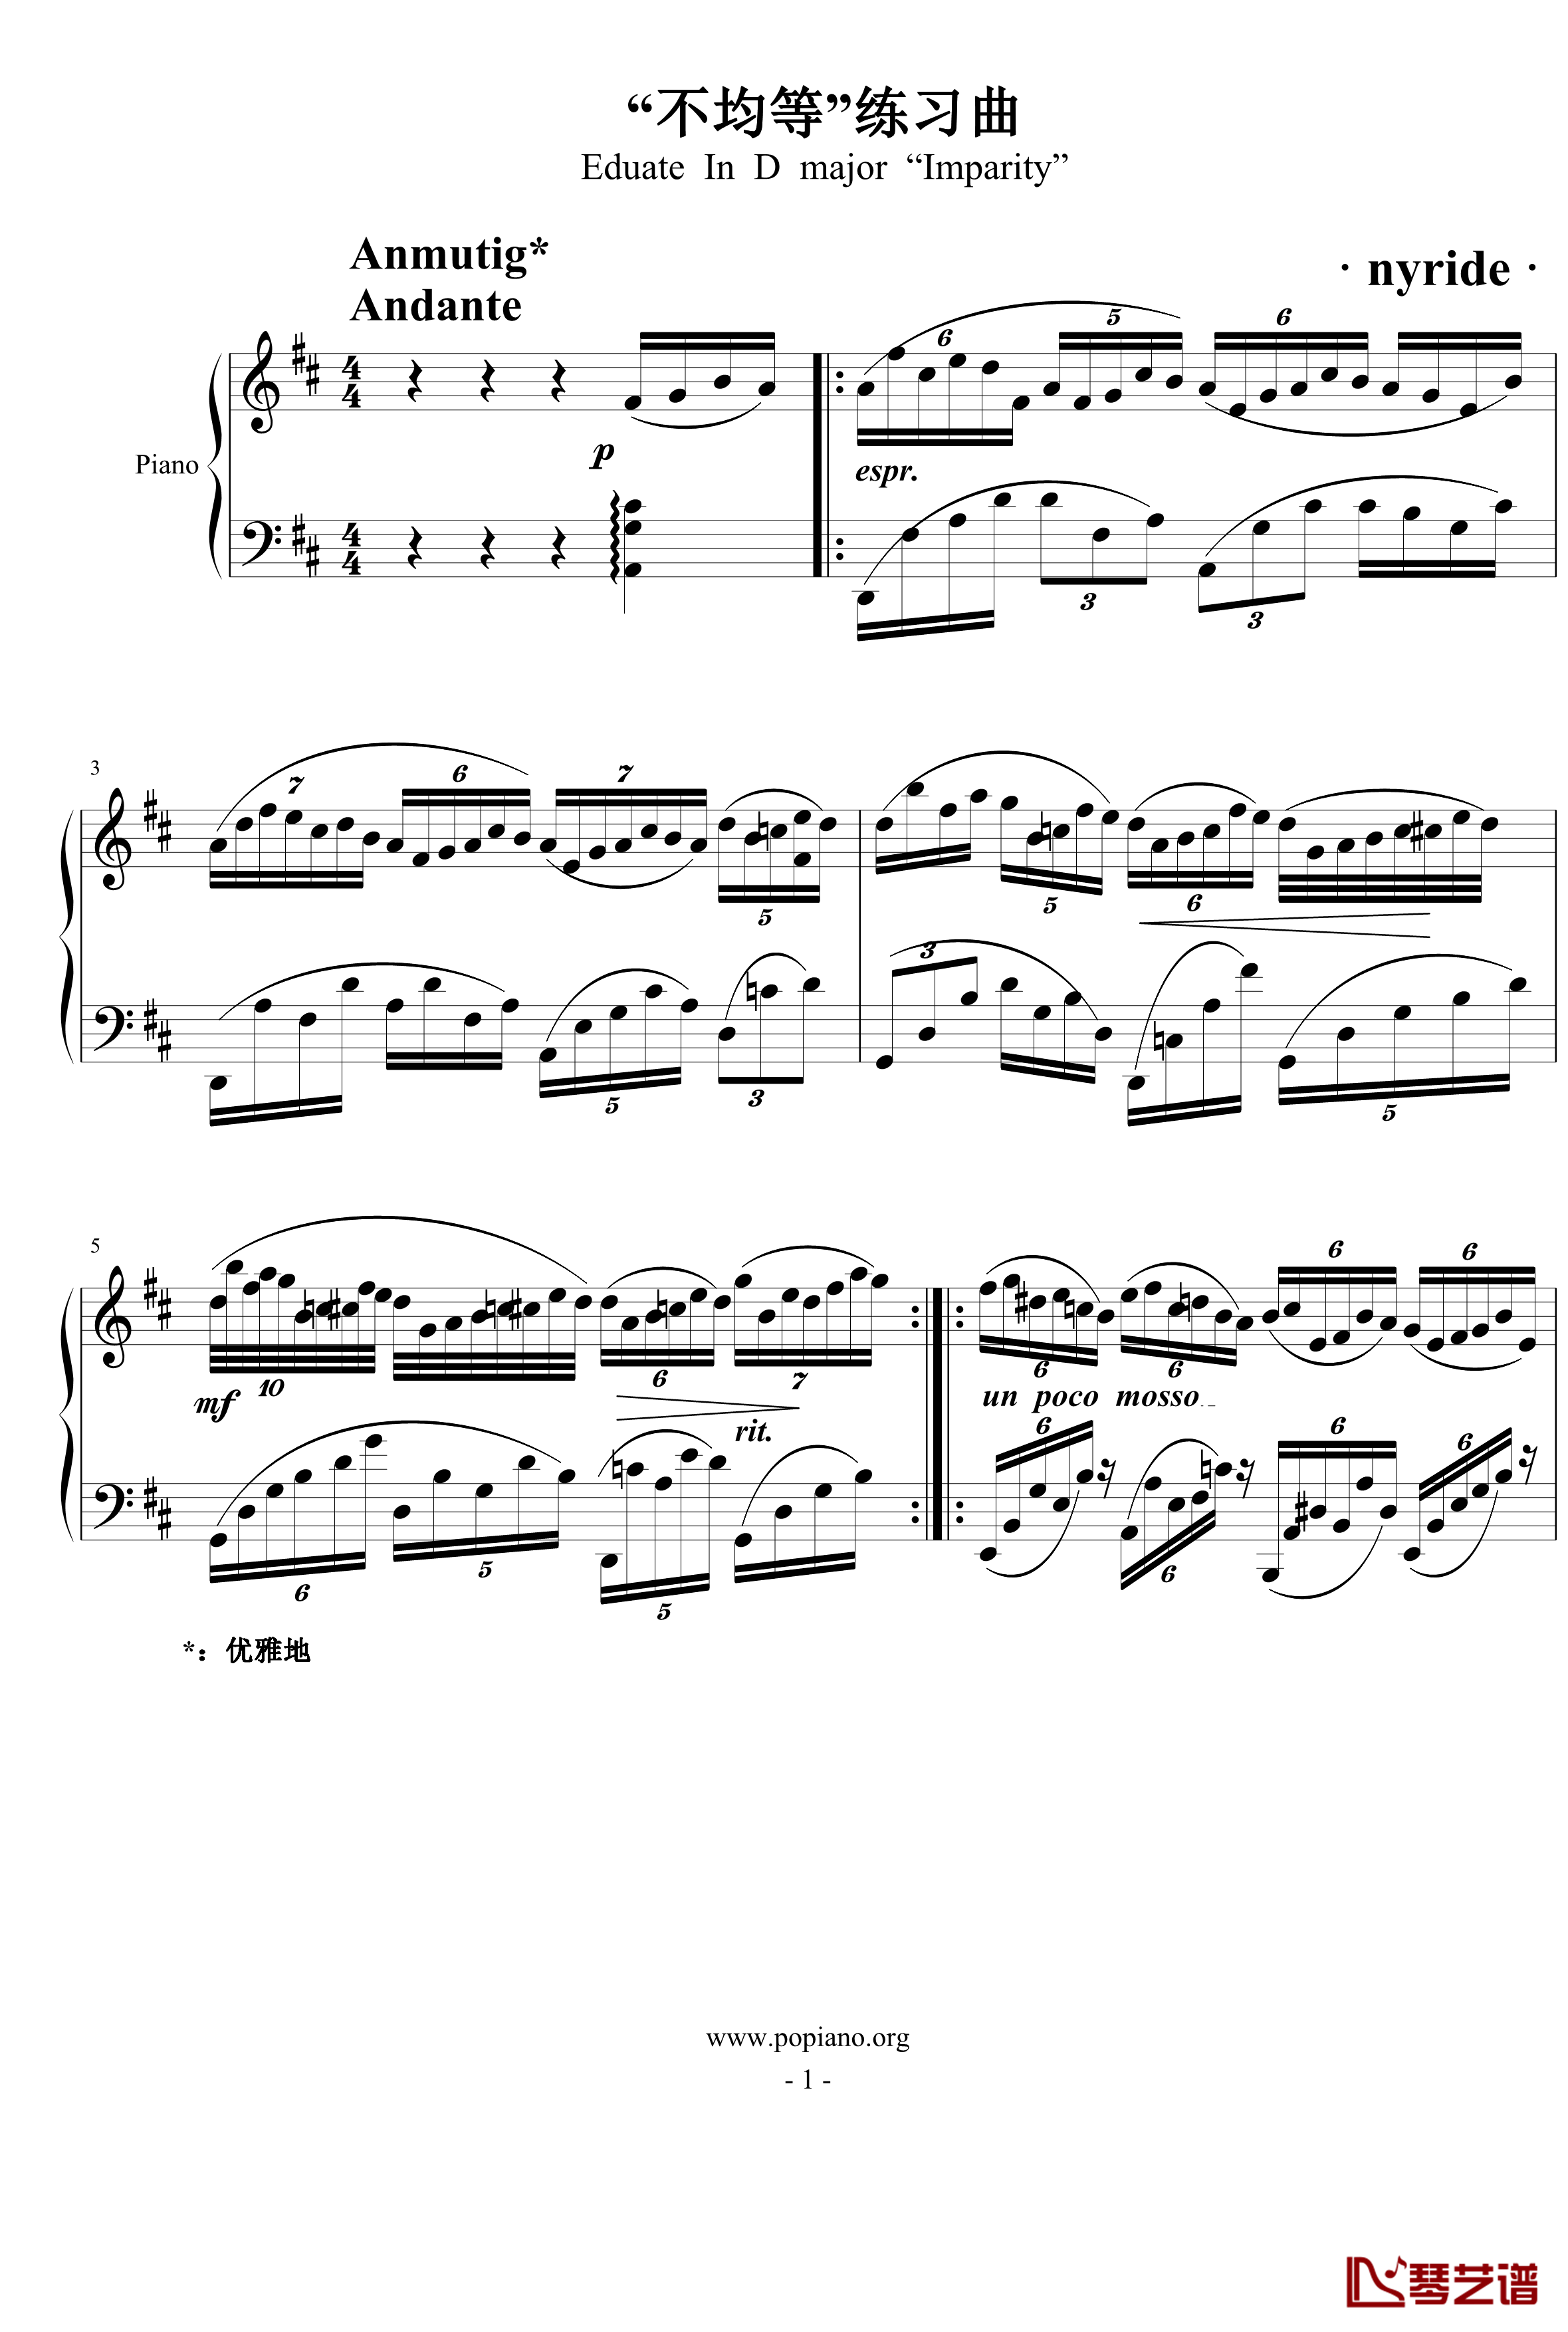 不均等练习曲钢琴谱-nyride1